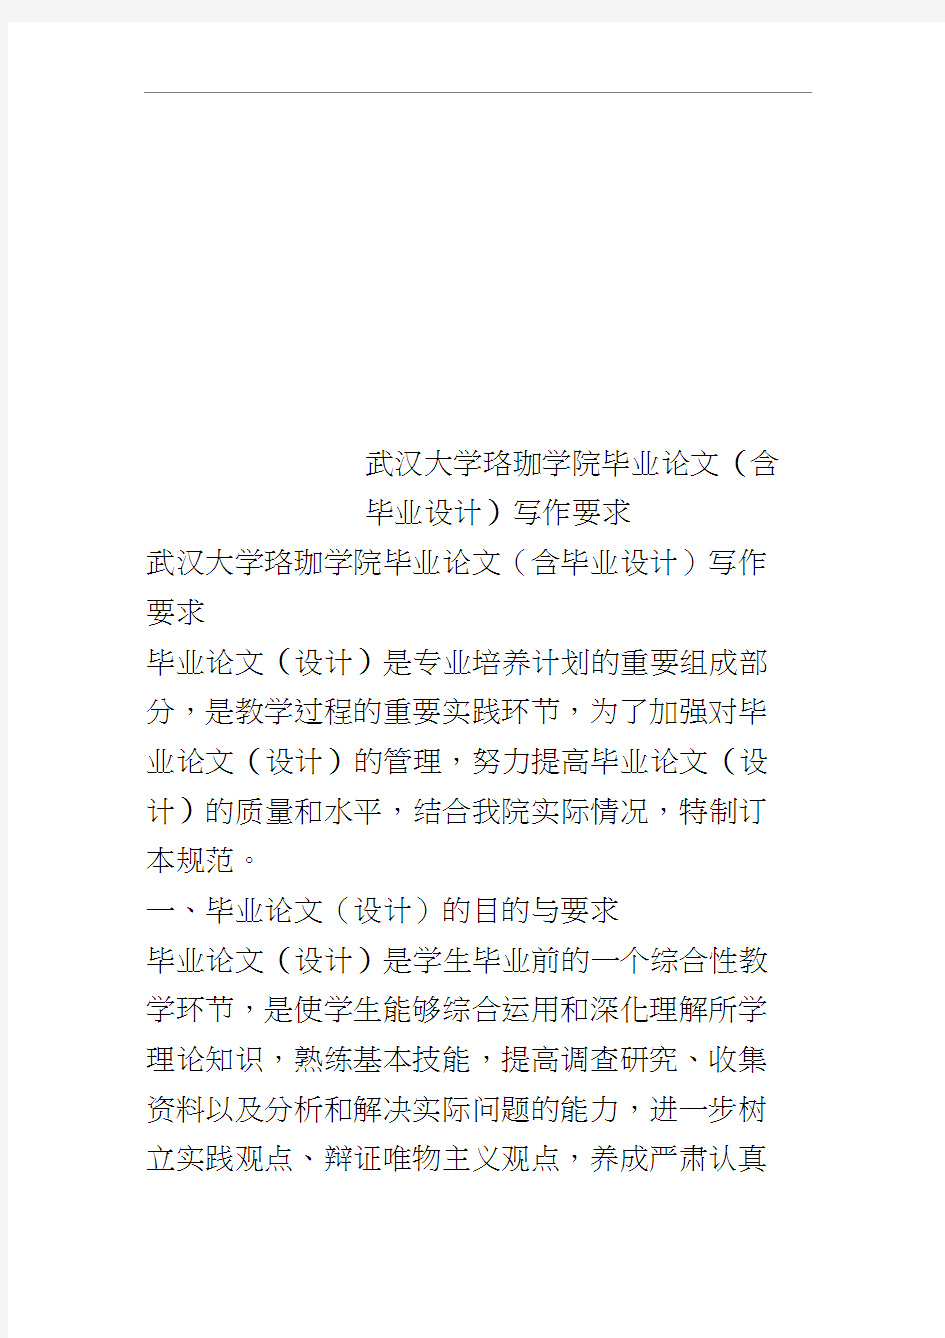 武汉大学珞珈学院毕业论文(含毕业设计)写作要求